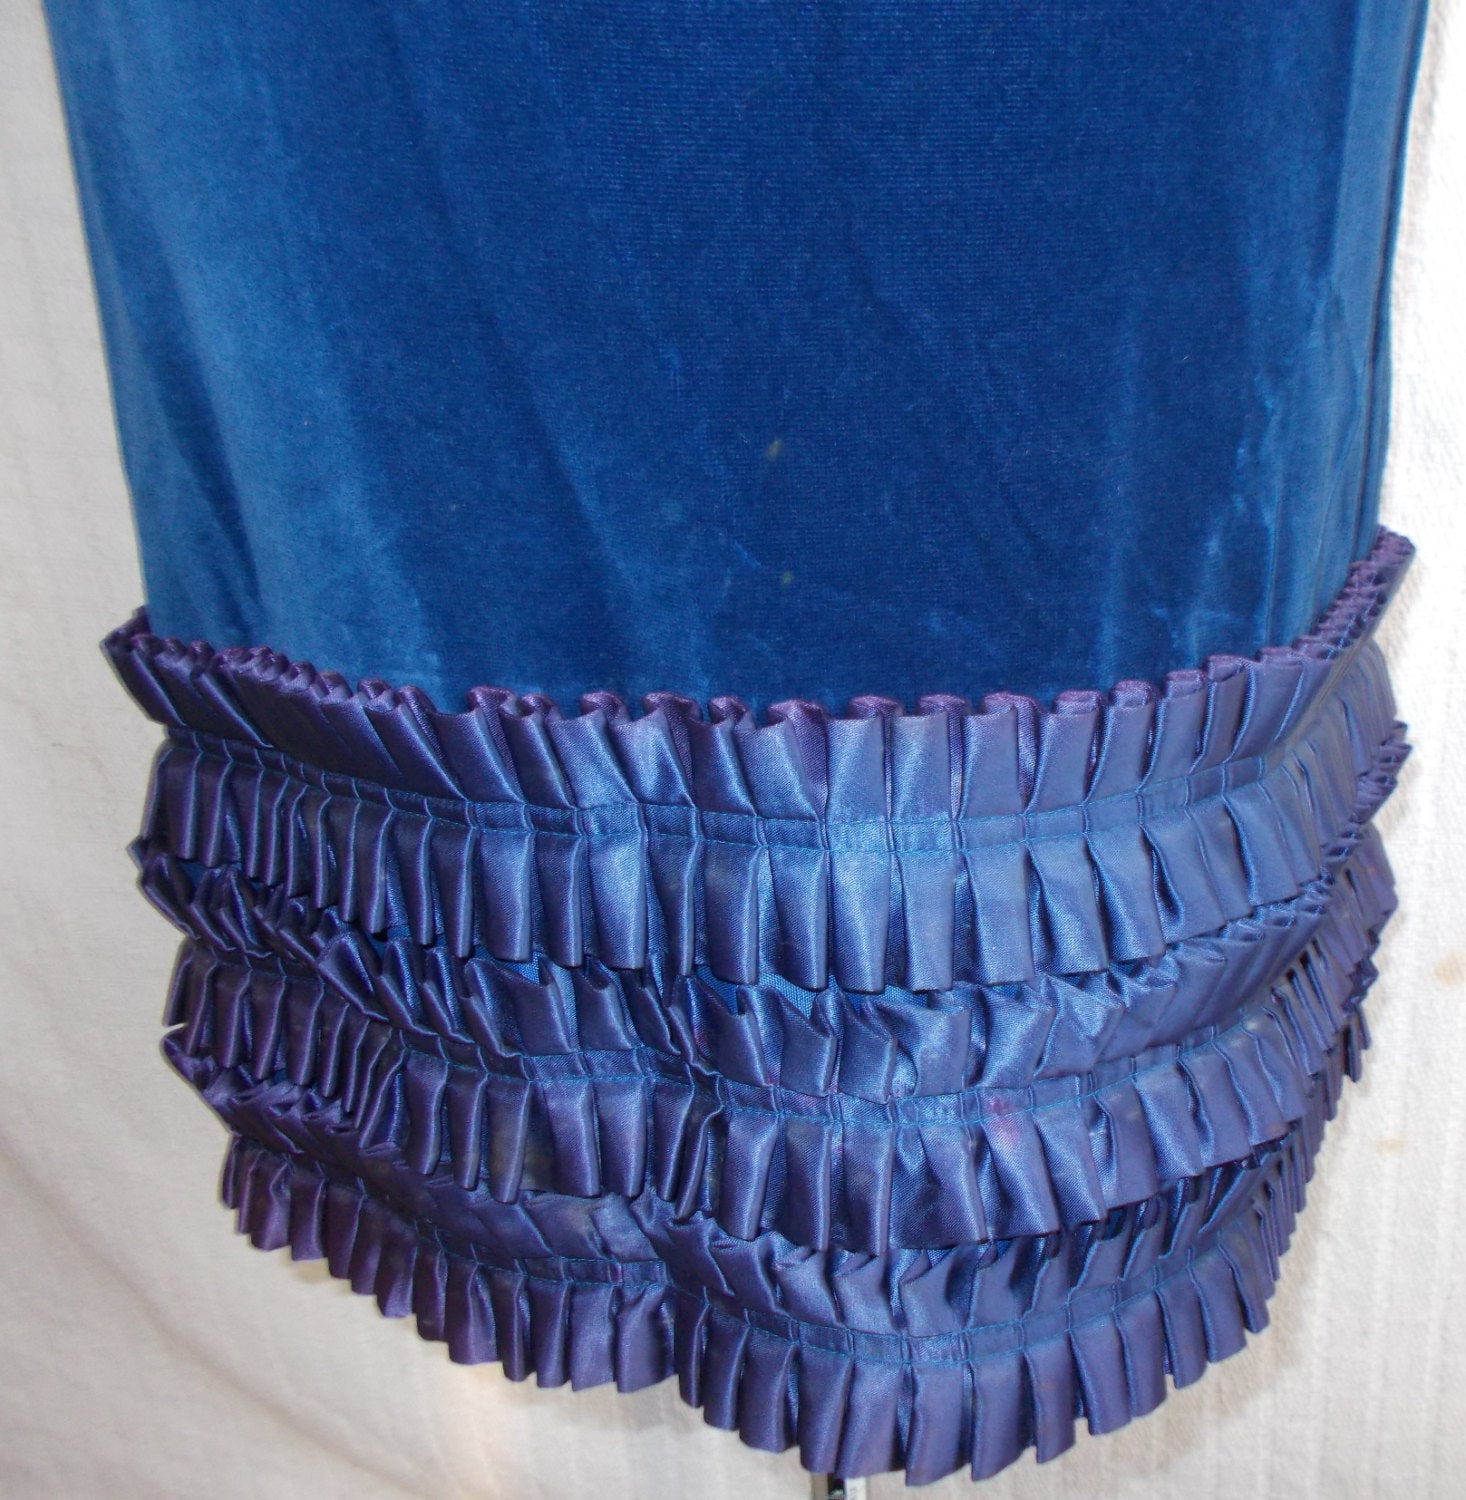 Glamourous, UnusualMidnight Blue Velvet Vintage Designer Dress, with ruffled satin hemline.Sleeveless lined.Size 36 Wonkey Donkey Bazaar